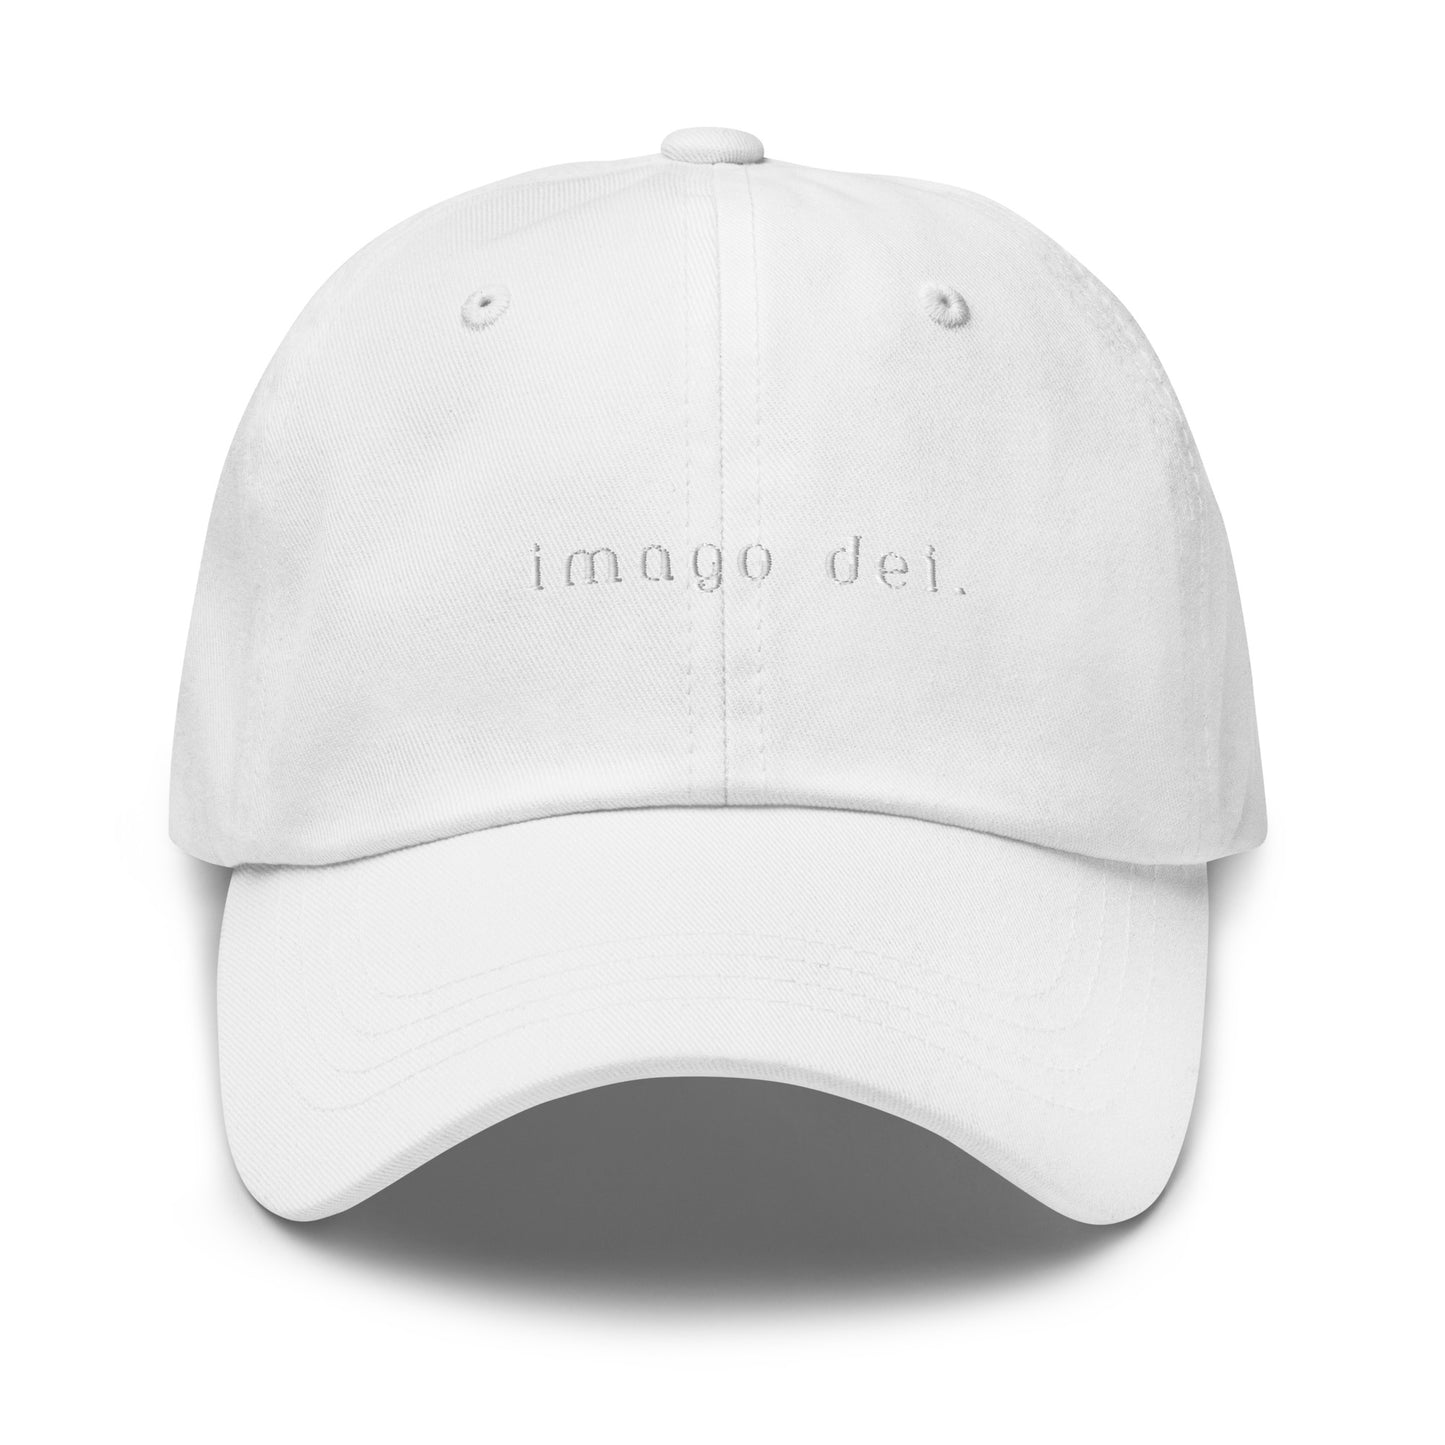 Imago Dei Hat